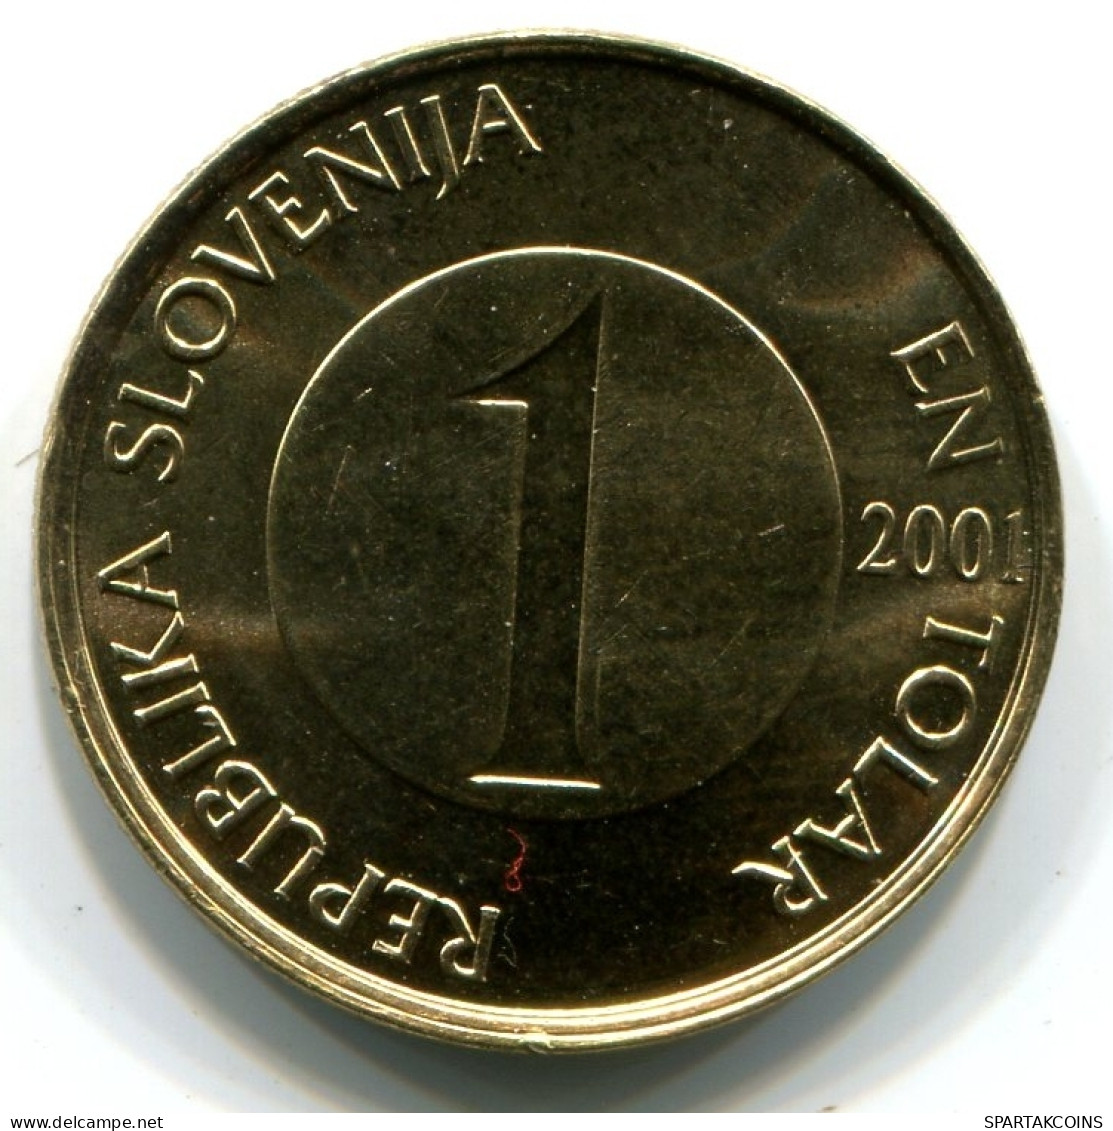 1 TOLAR 2001 SLOVENIA UNC Fish Coin #W11370.U - Slovenia